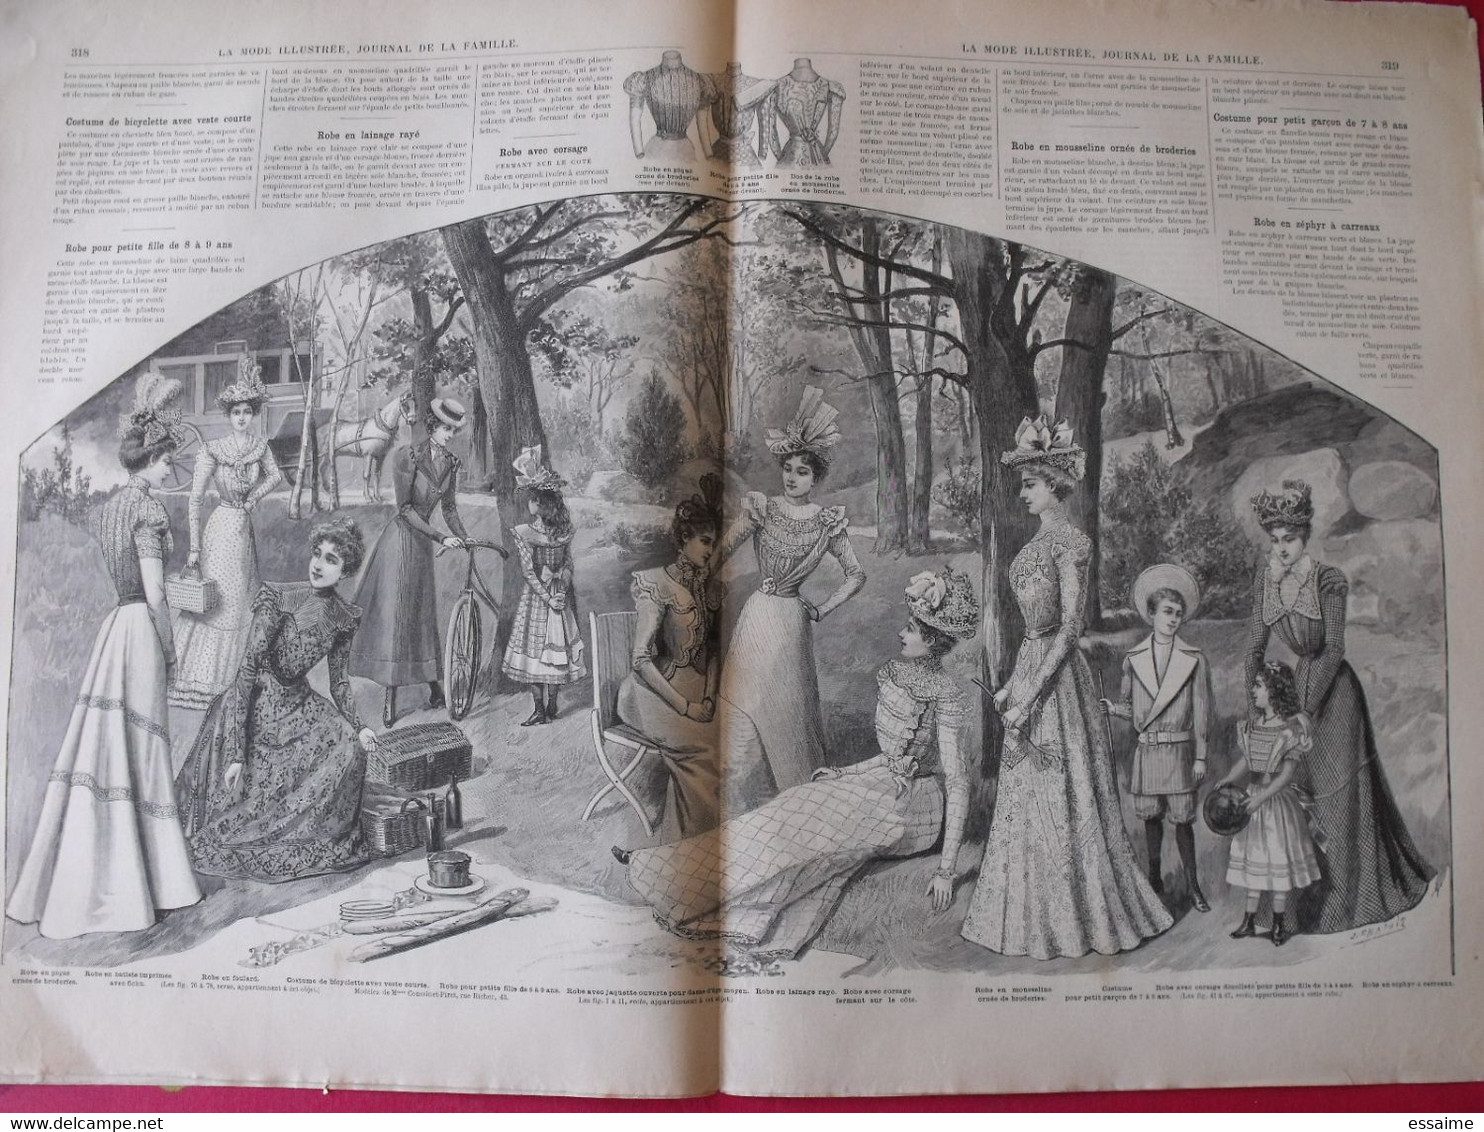 4 Revues La Mode Illustrée, Journal De La Famille.  N° 23,25,26,27 De 1898. Couverture En Couleur. Jolies Gravures - Fashion